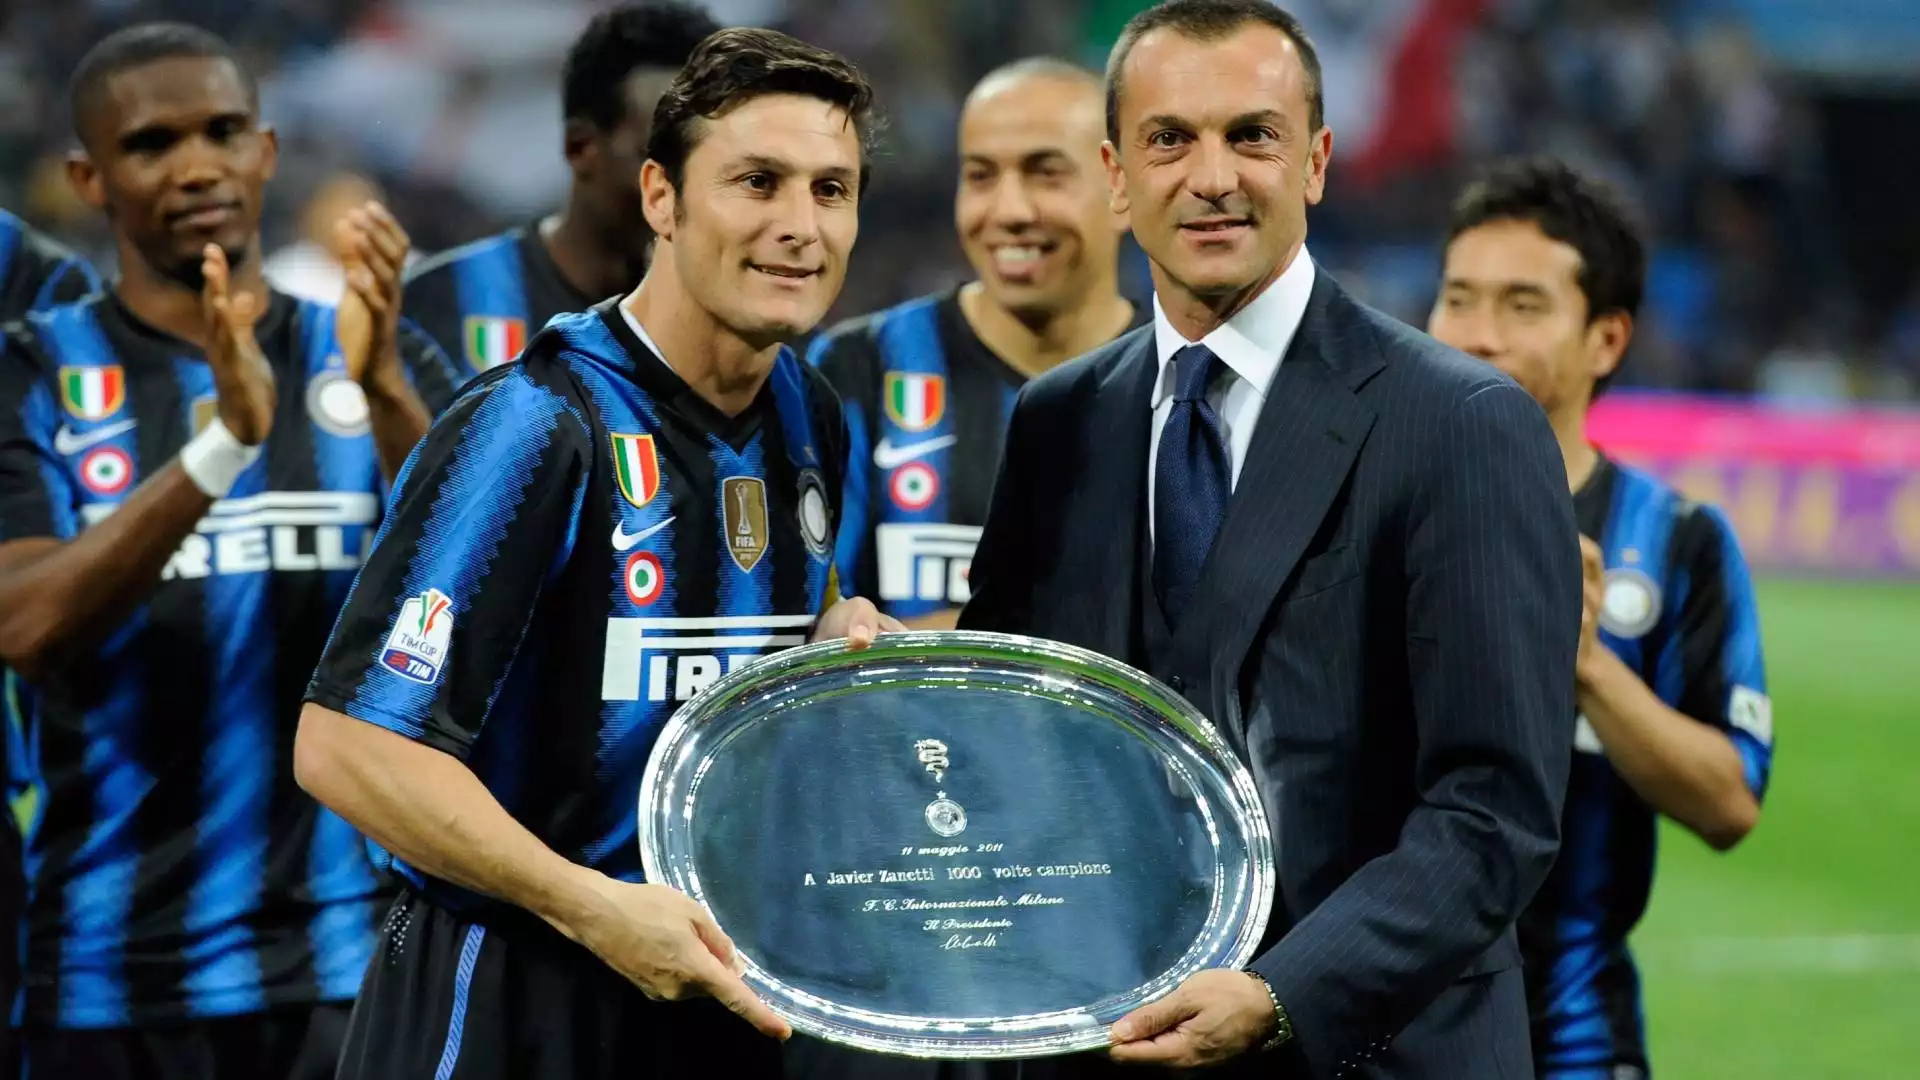 Il capitano ha ottenuto un riconoscimento per le 1000 partite disputate in carriera, in occasione del ritorno della semifinale di Coppa Italia contro la Roma nel 2011